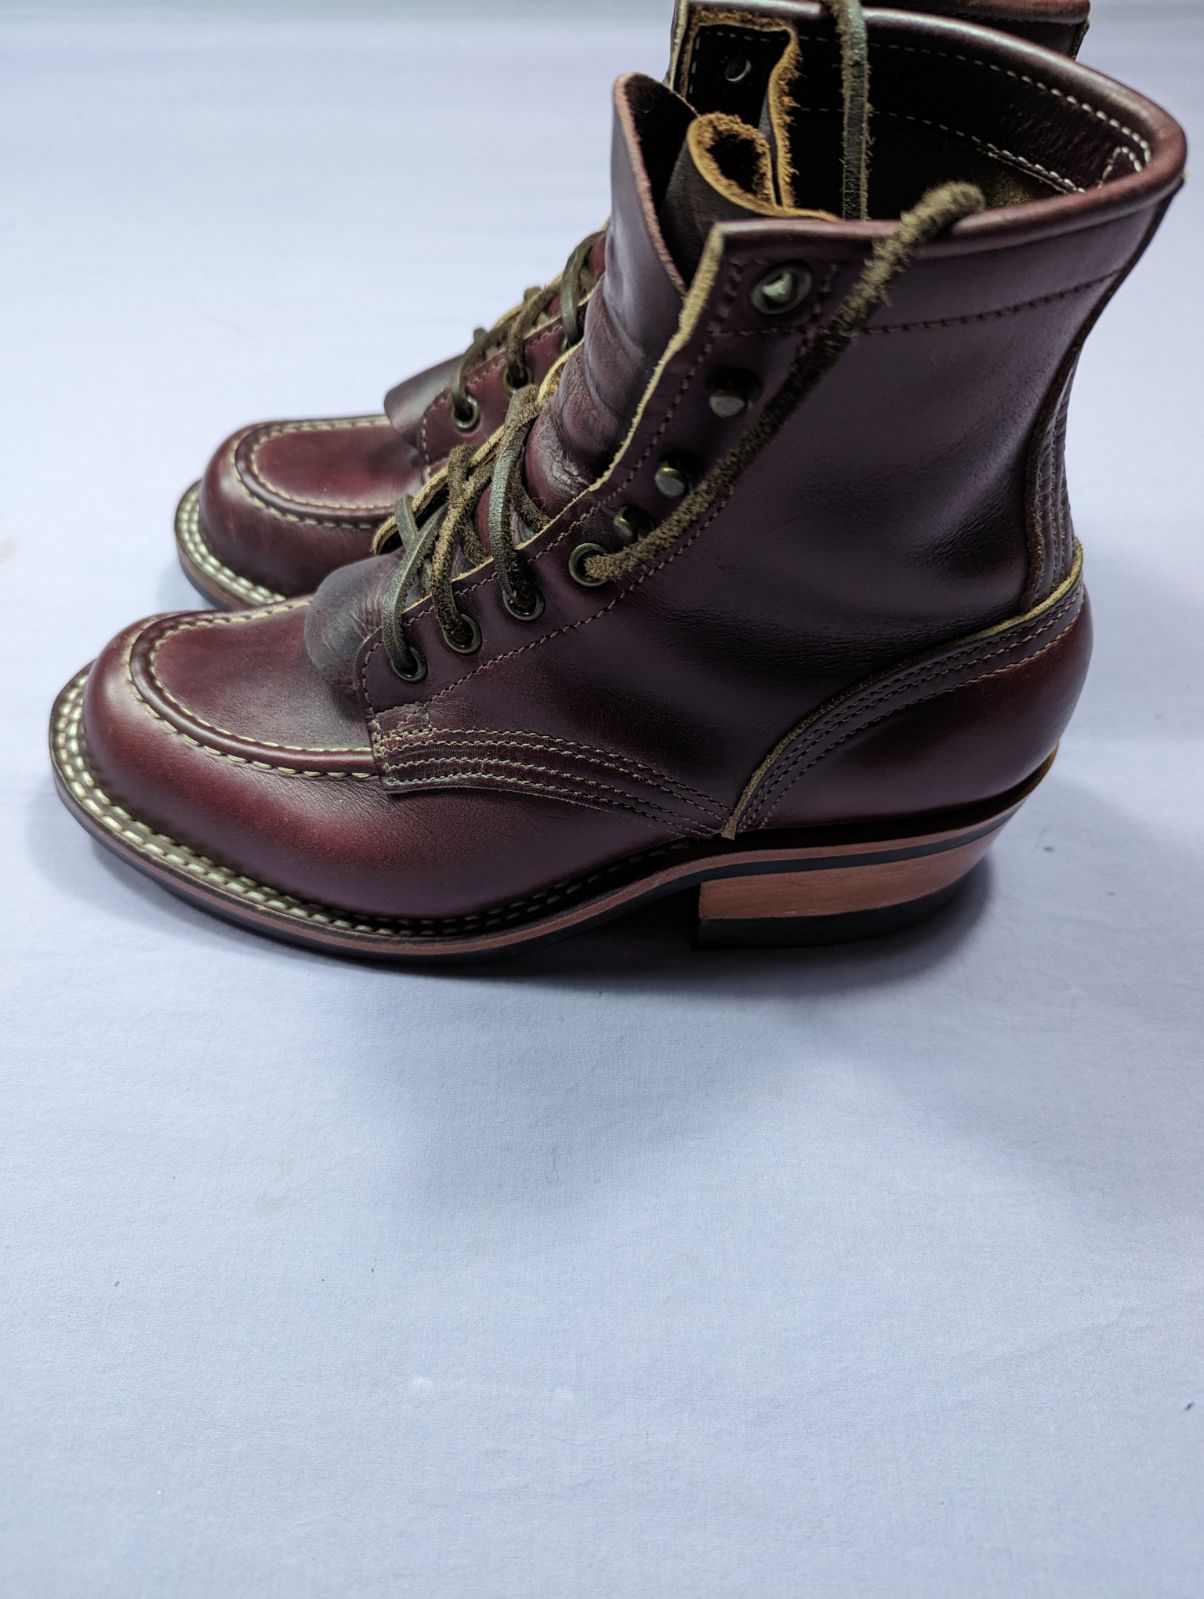 Nick's Moc Toe Boots, 55 last, color 8 CXL, 6.5FF